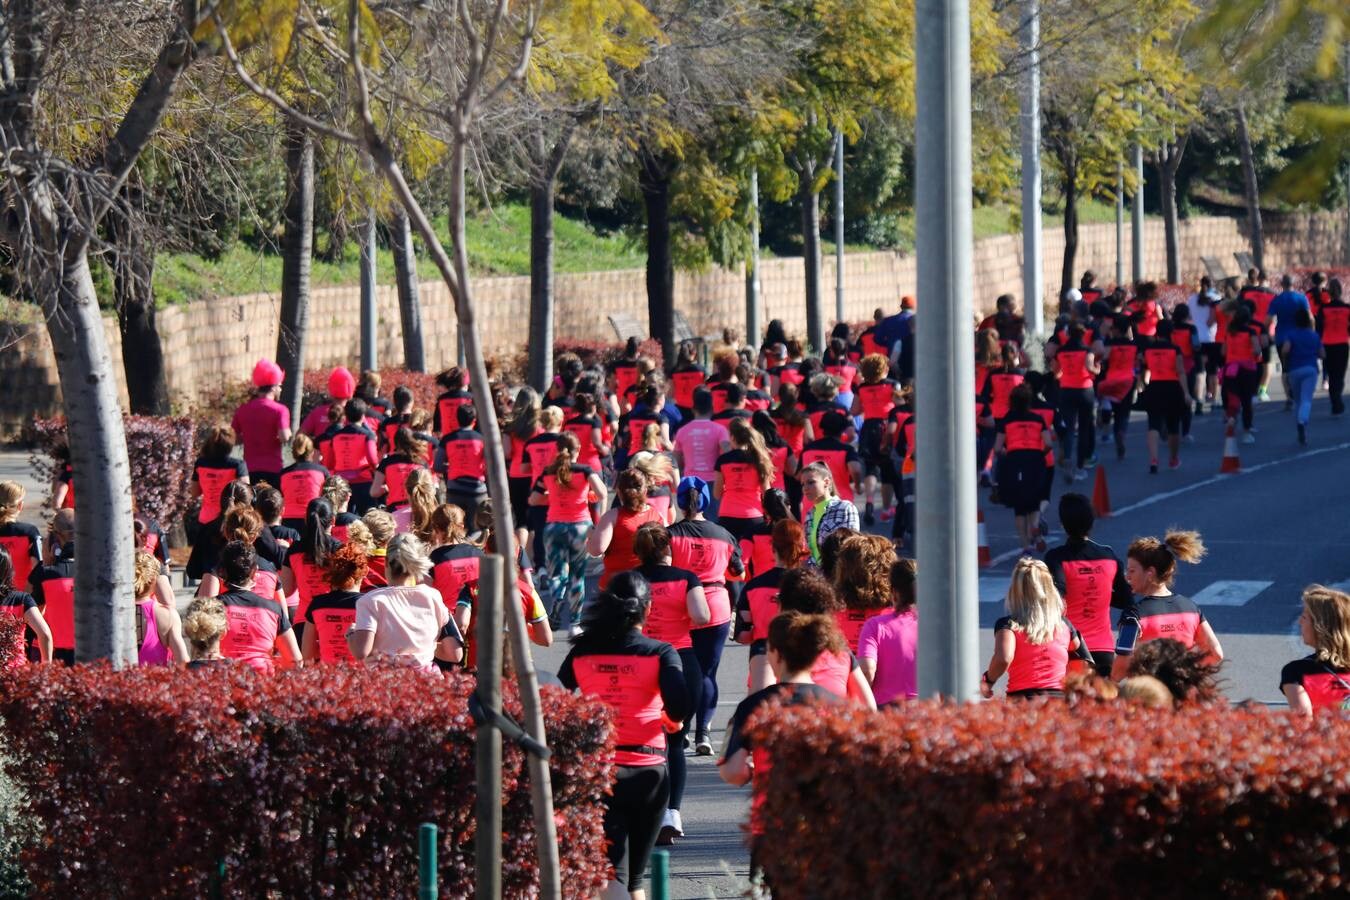 La Pink Running del Día de la Mujer en Córdoba, en imágenes